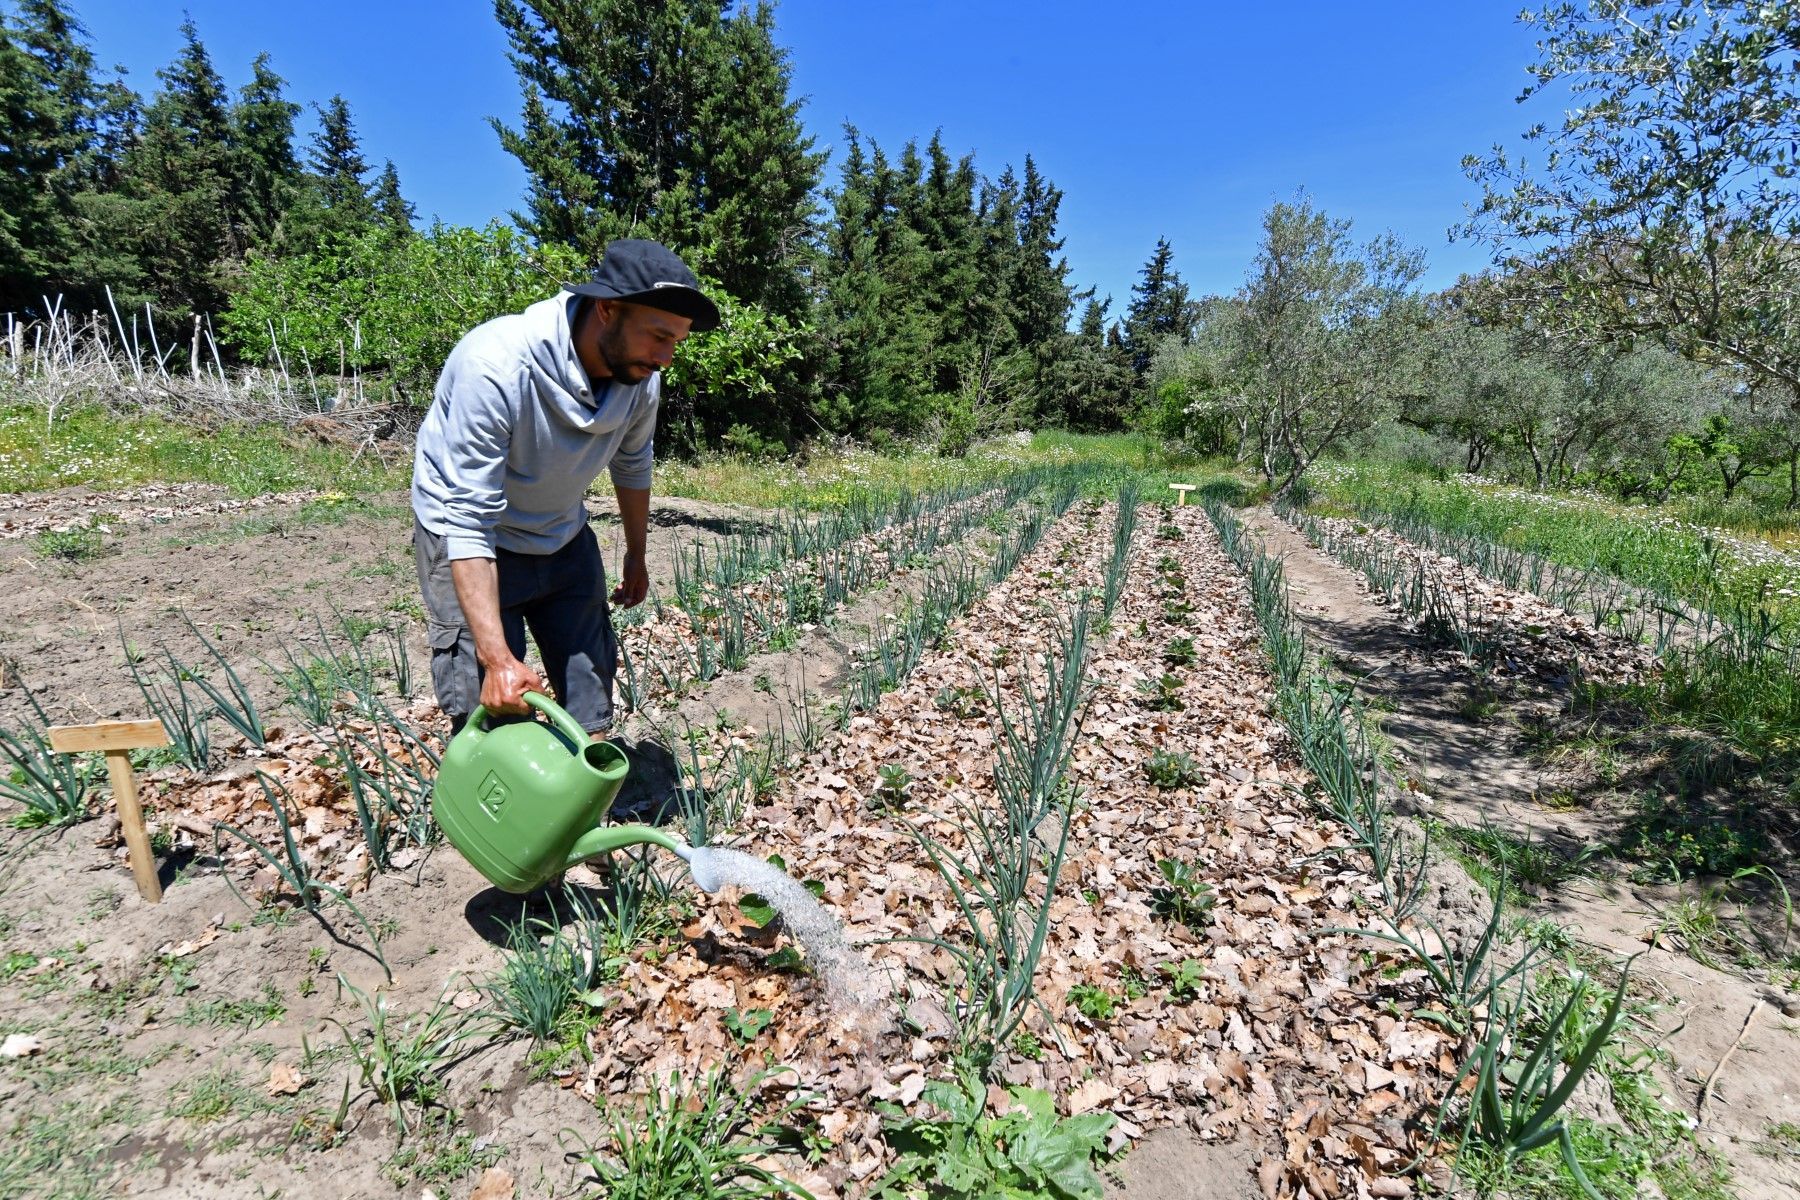 الزراعة الدائمة تمد جذورها في تونس المهددة بتغير المناخ